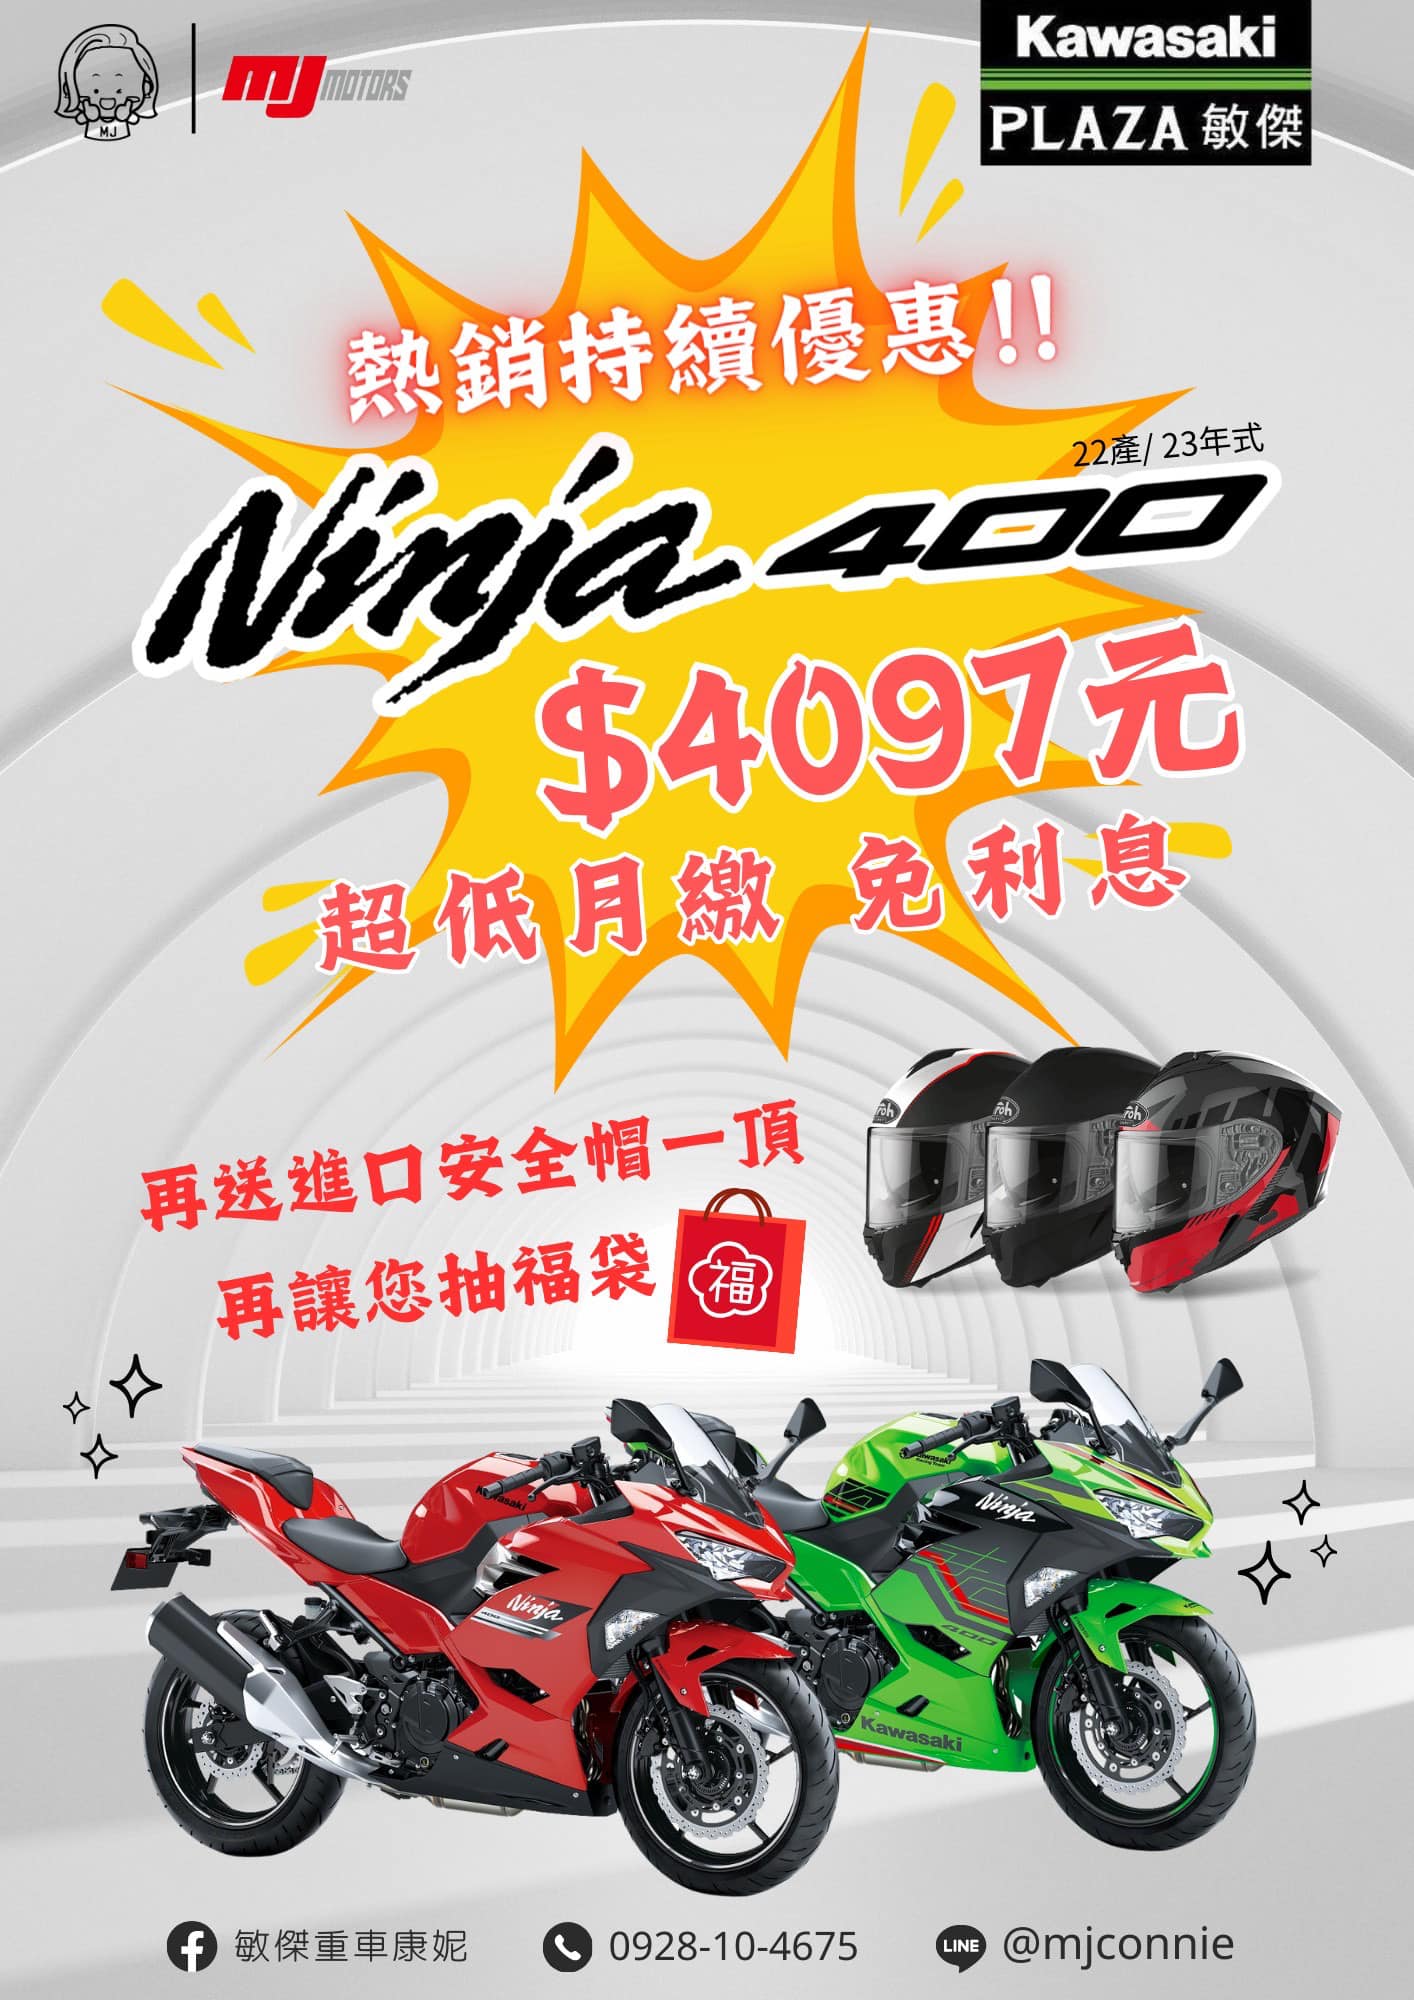 【敏傑車業資深銷售專員 康妮 Connie】KAWASAKI NINJA400 - 「Webike-摩托車市」 『敏傑康妮』考慮入手一台 Kawasaki Ninja400 除了超省錢零利率外 再加碼送您安全帽喔